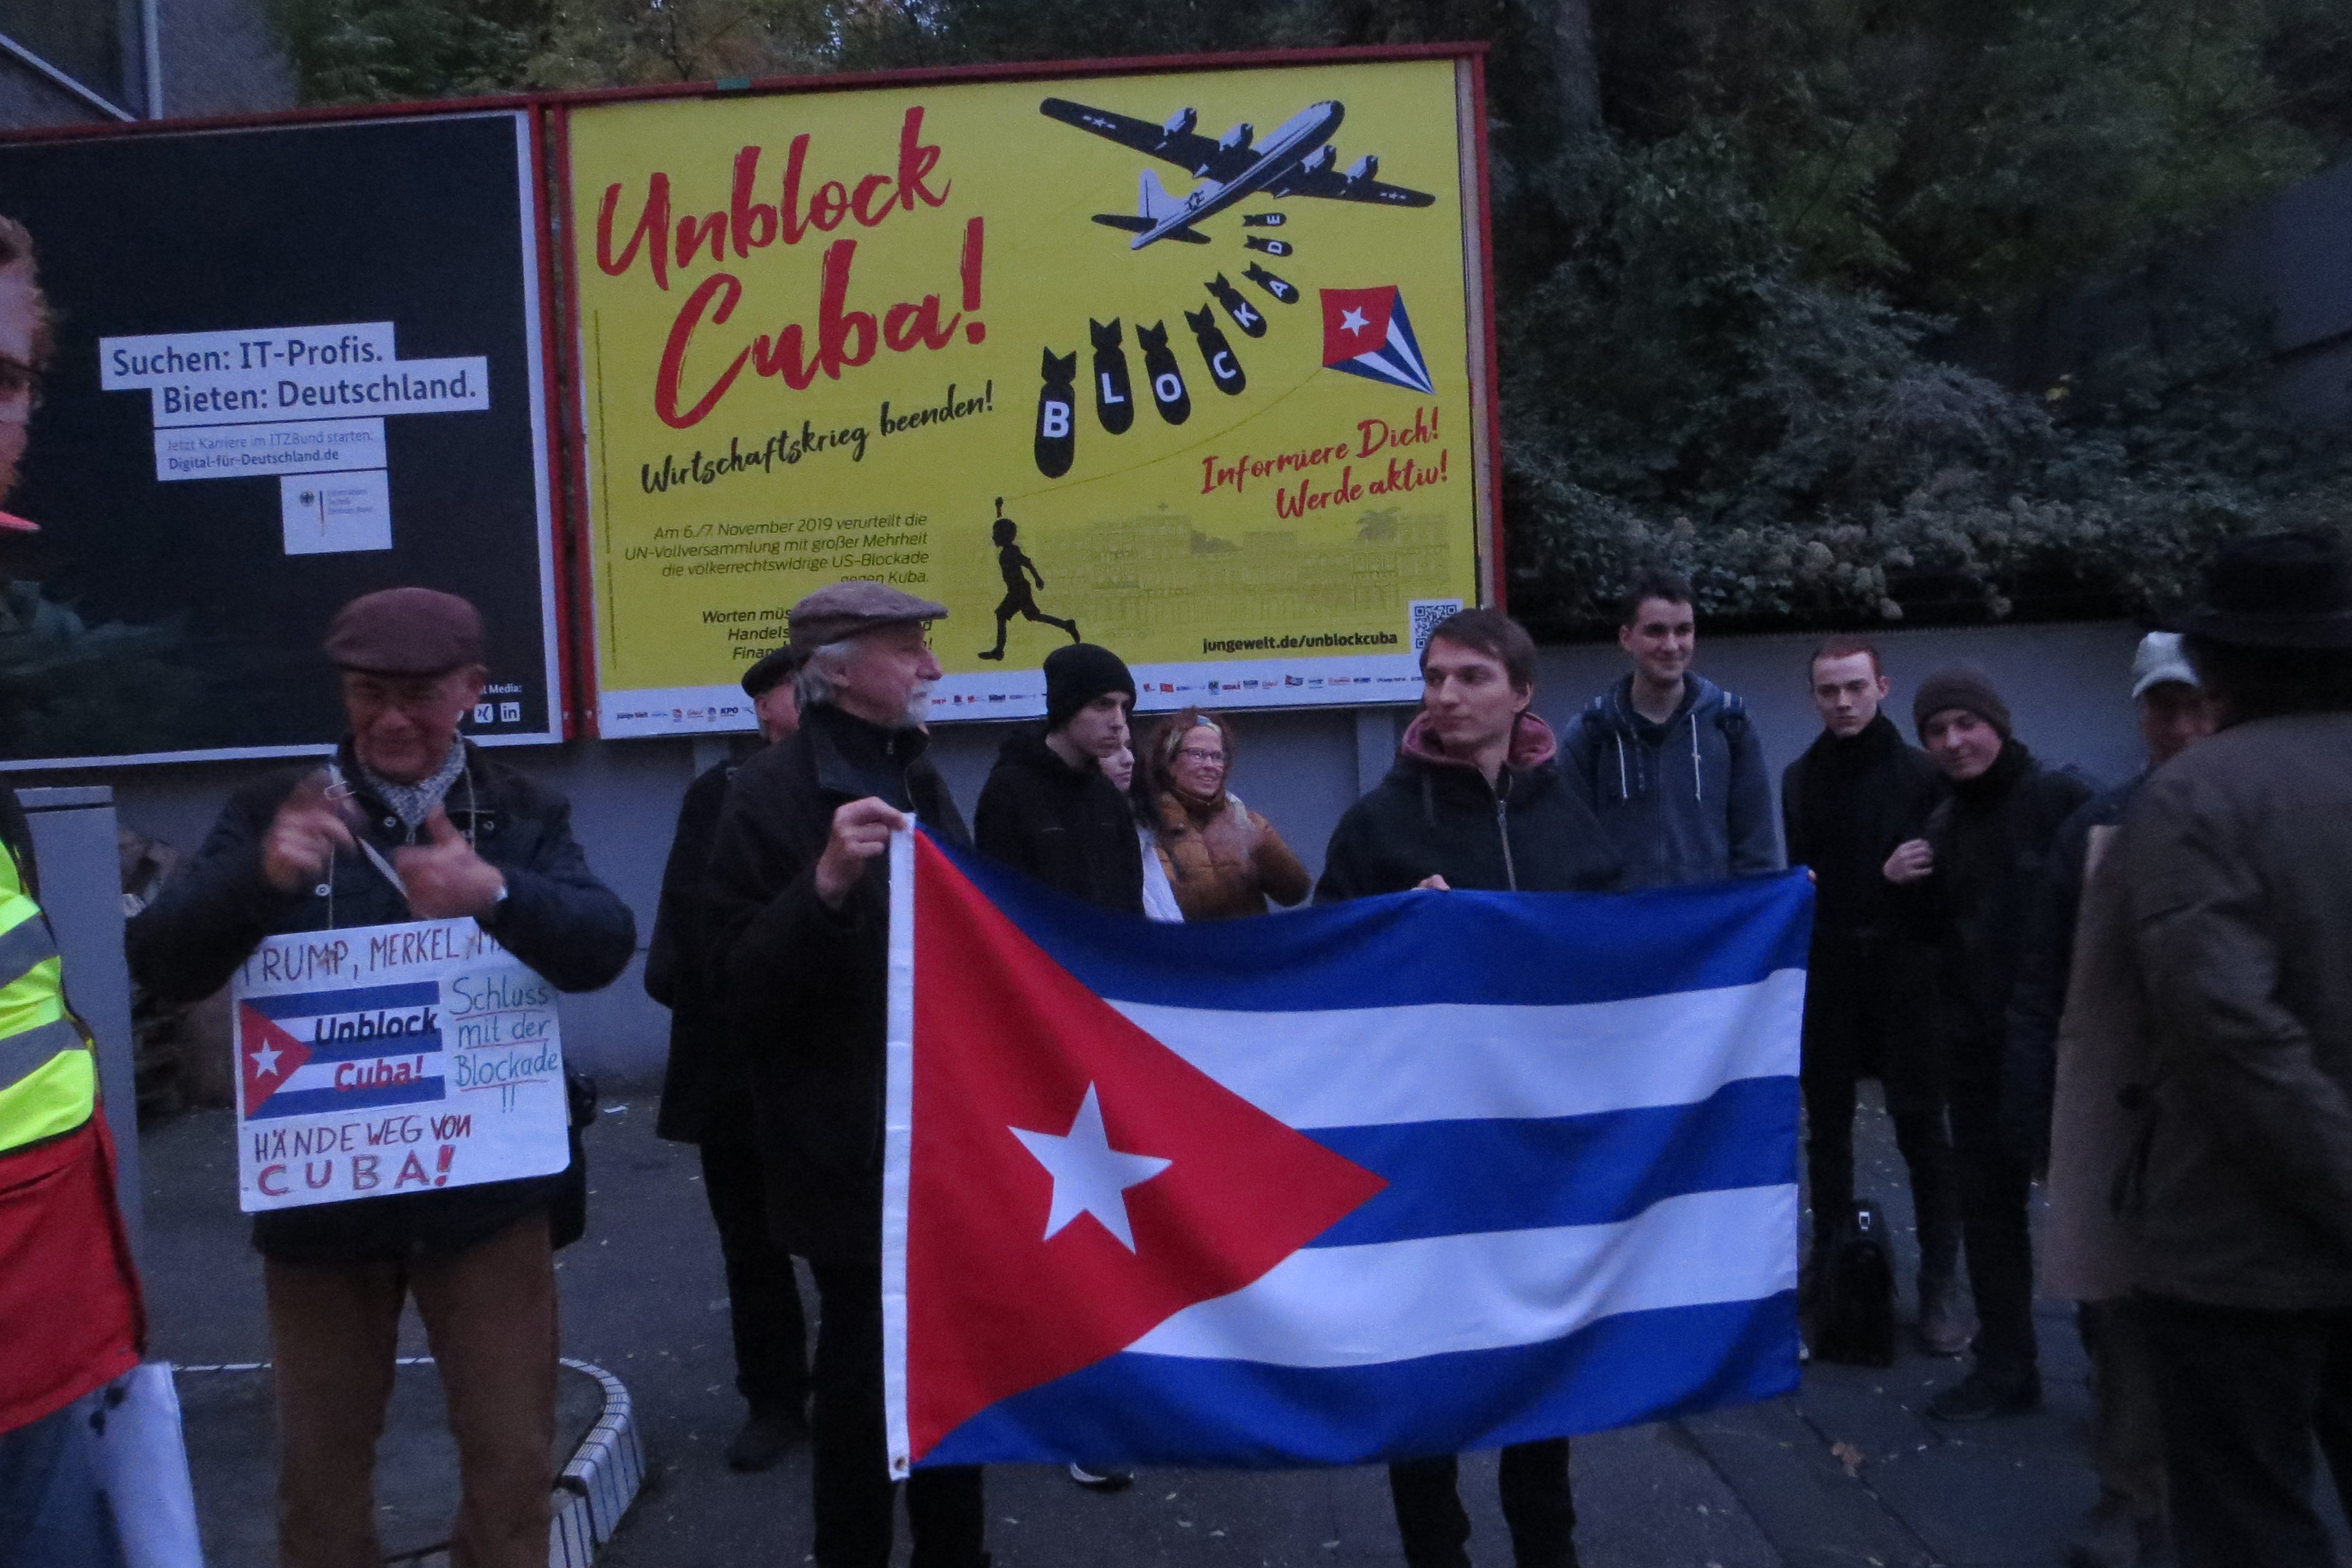 Unblock-Cuba-Aktion Stuttgart